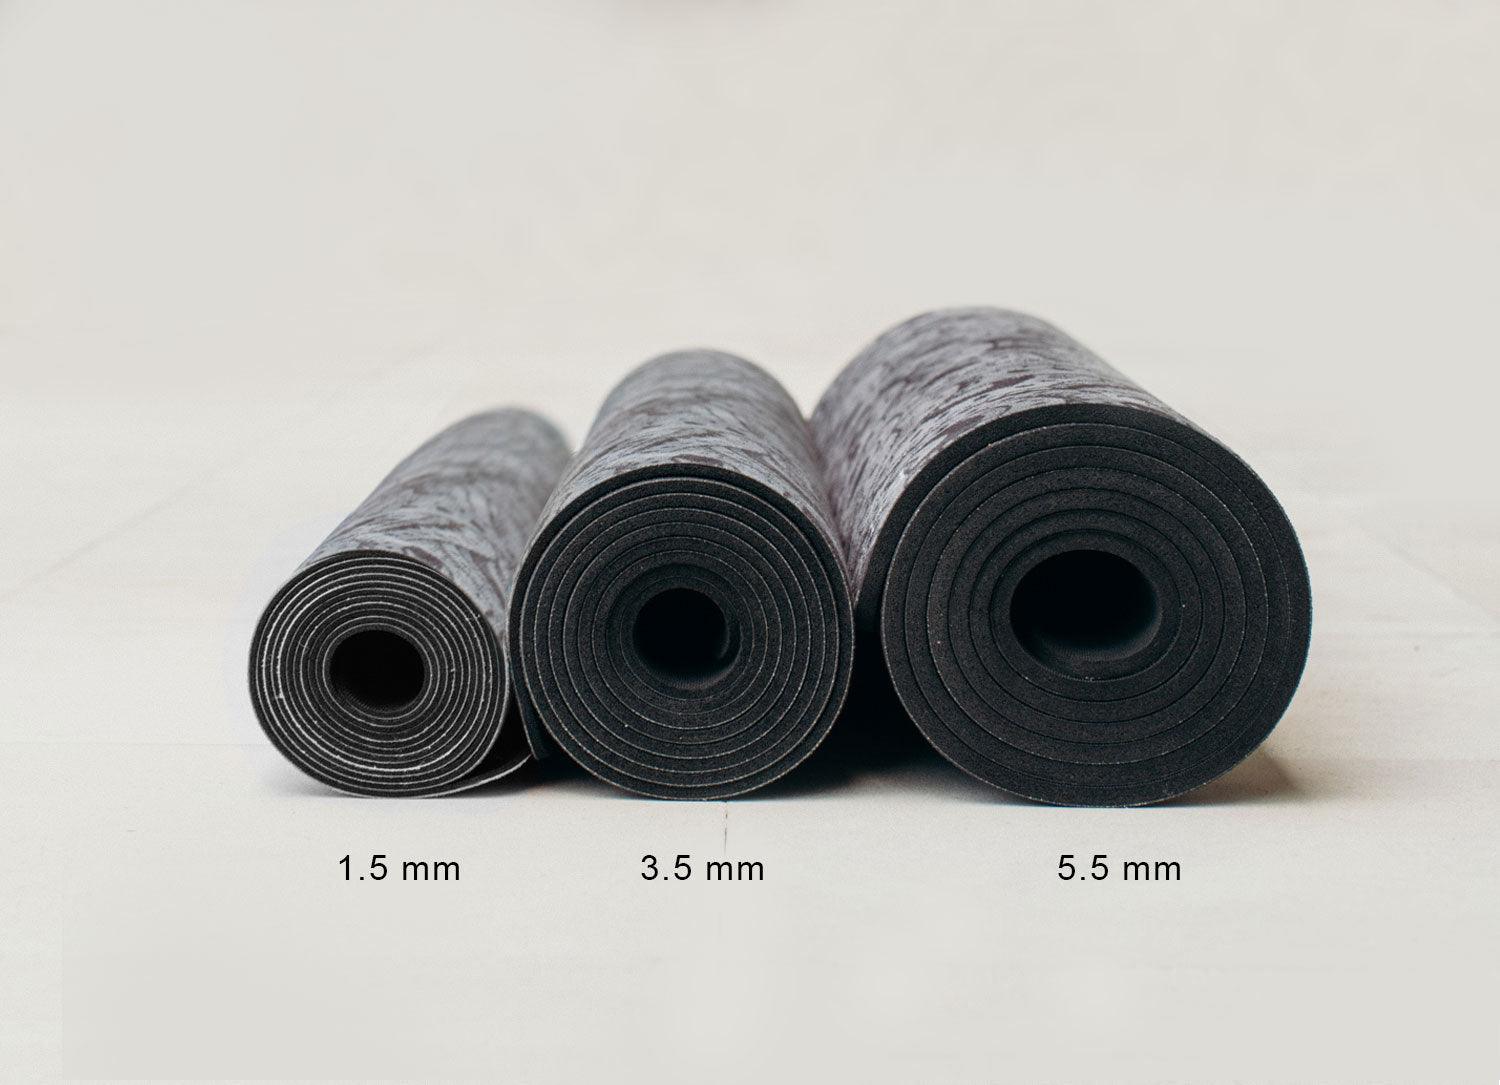 Combo Yoga Mat: 2-in-1 (Mat + Towel) - Mandala Black - Best Yoga Mat for Hot Yoga - Yoga Design Lab 